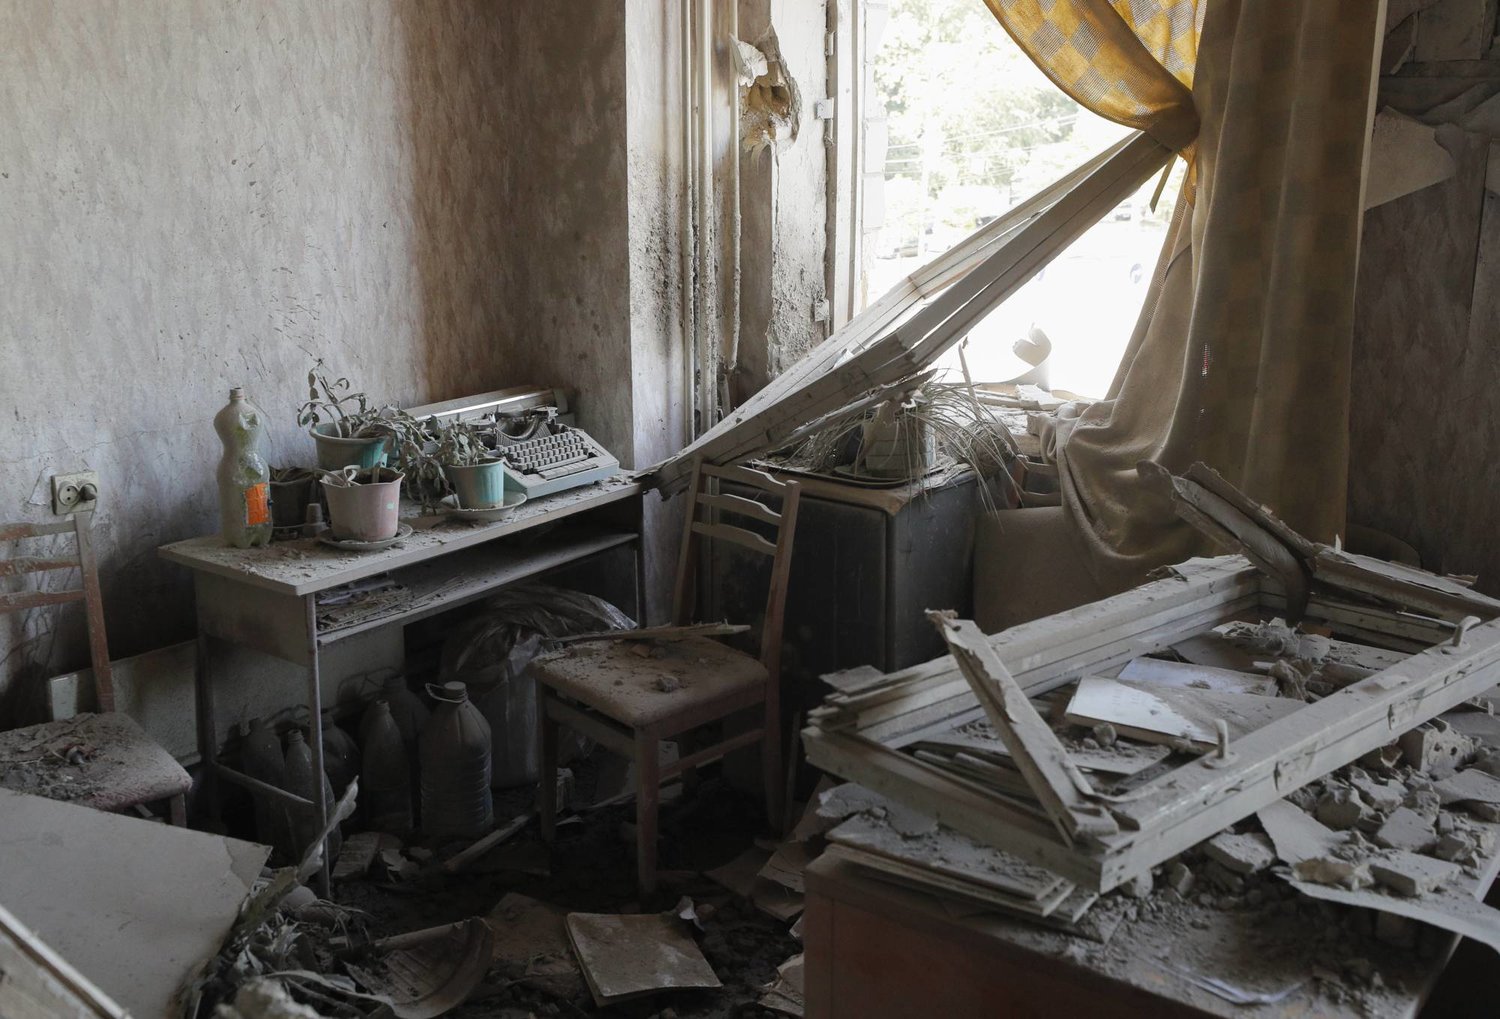 دمار لحق بمبنى إداري في كييف نتيجة قصف بالمسيرات المفخخة (إ.ب.أ)